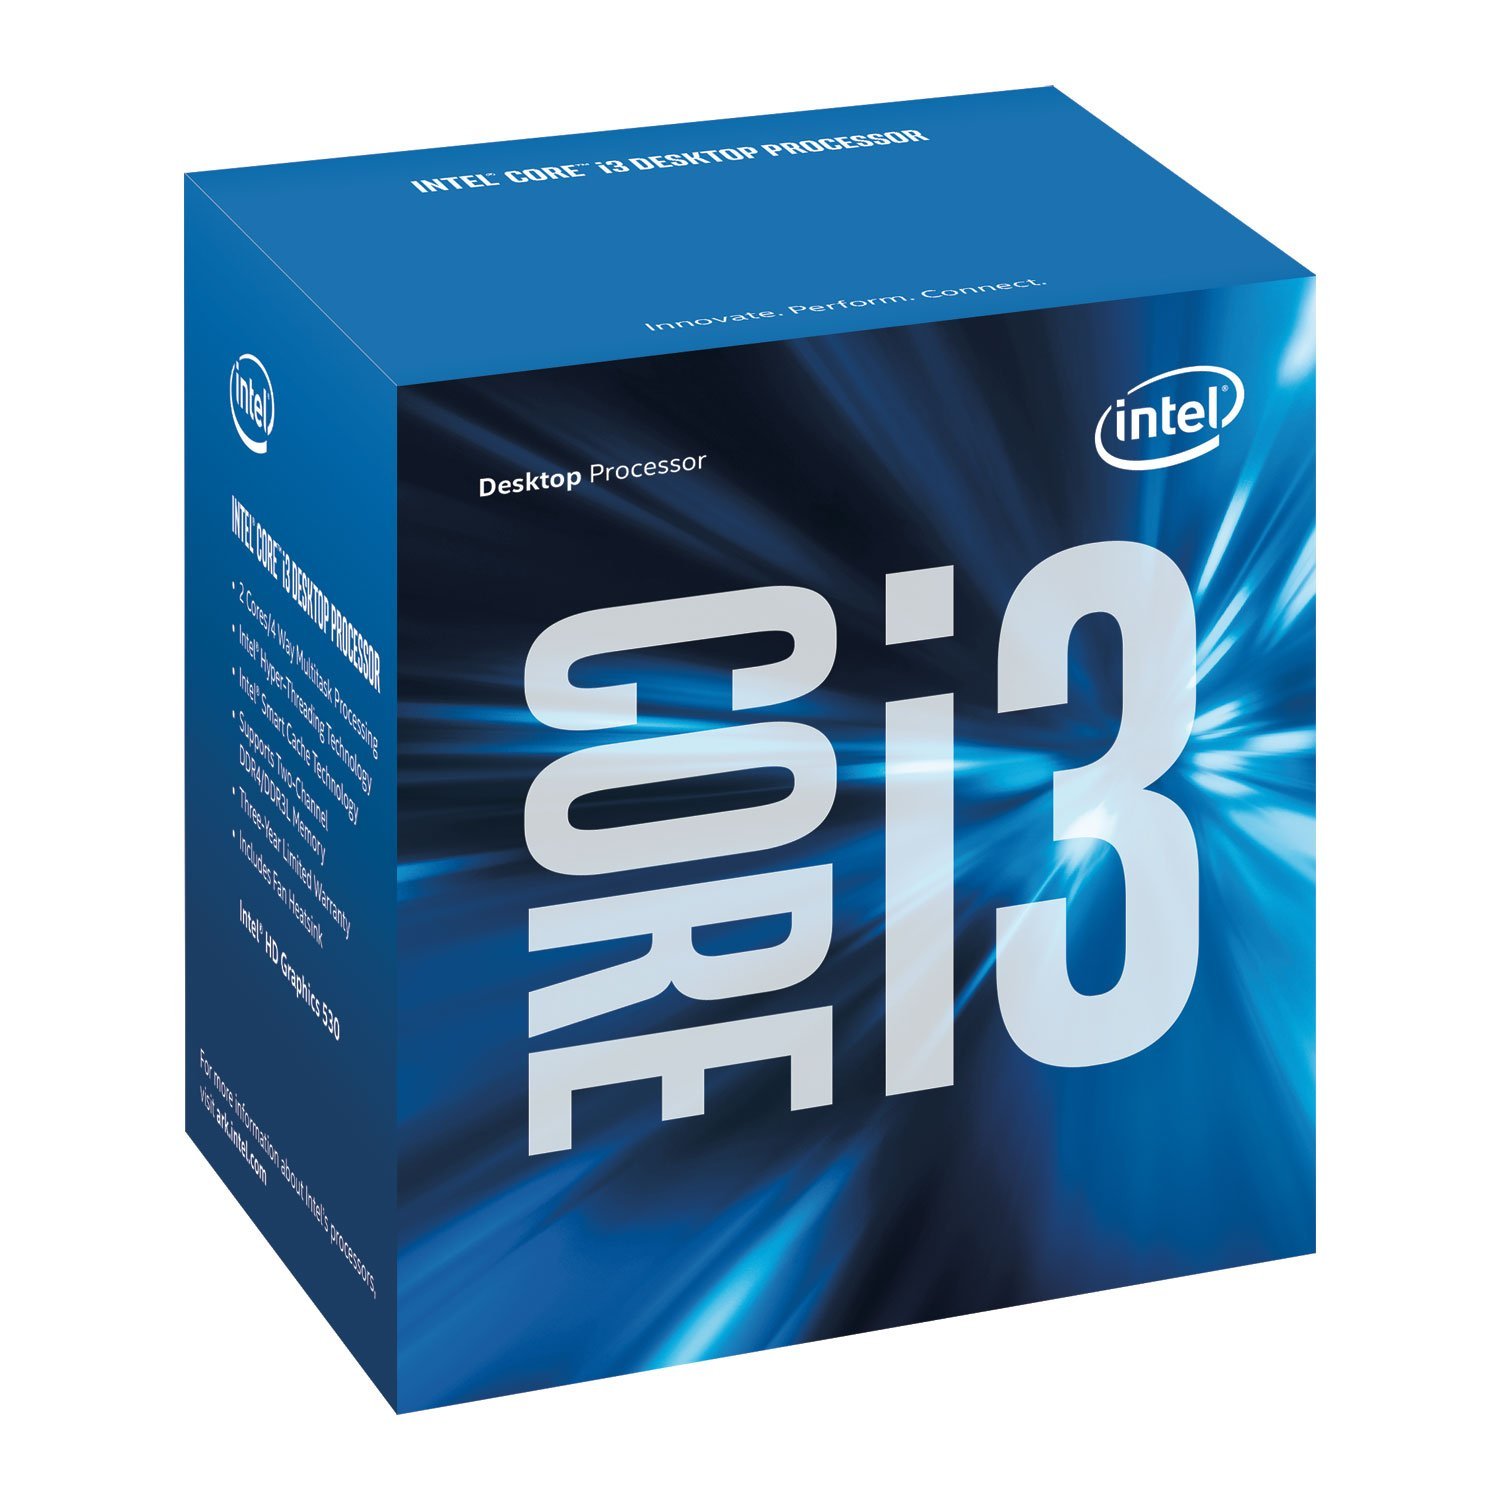 Intel Core i3-6100 6th Gen LGA 1151 Processor